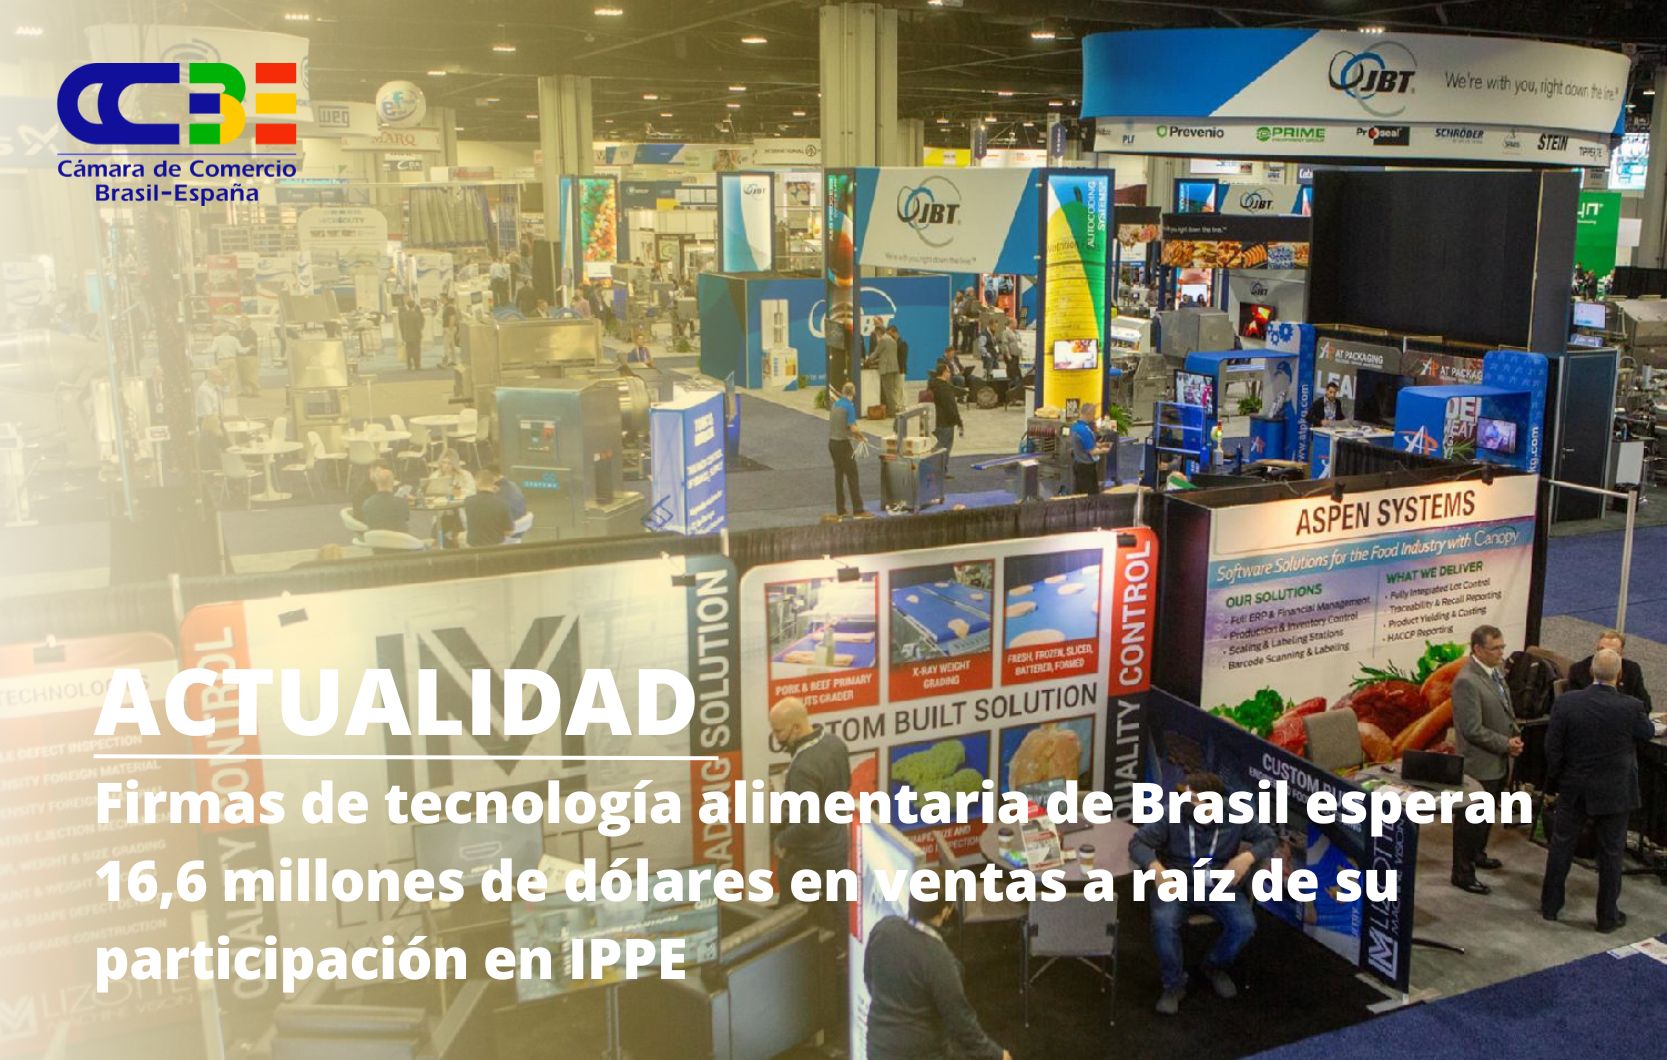 Once empresas brasileñas de tecnología alimentaria esperan facturar 16,6 millones de dólares tras participar en IPPE